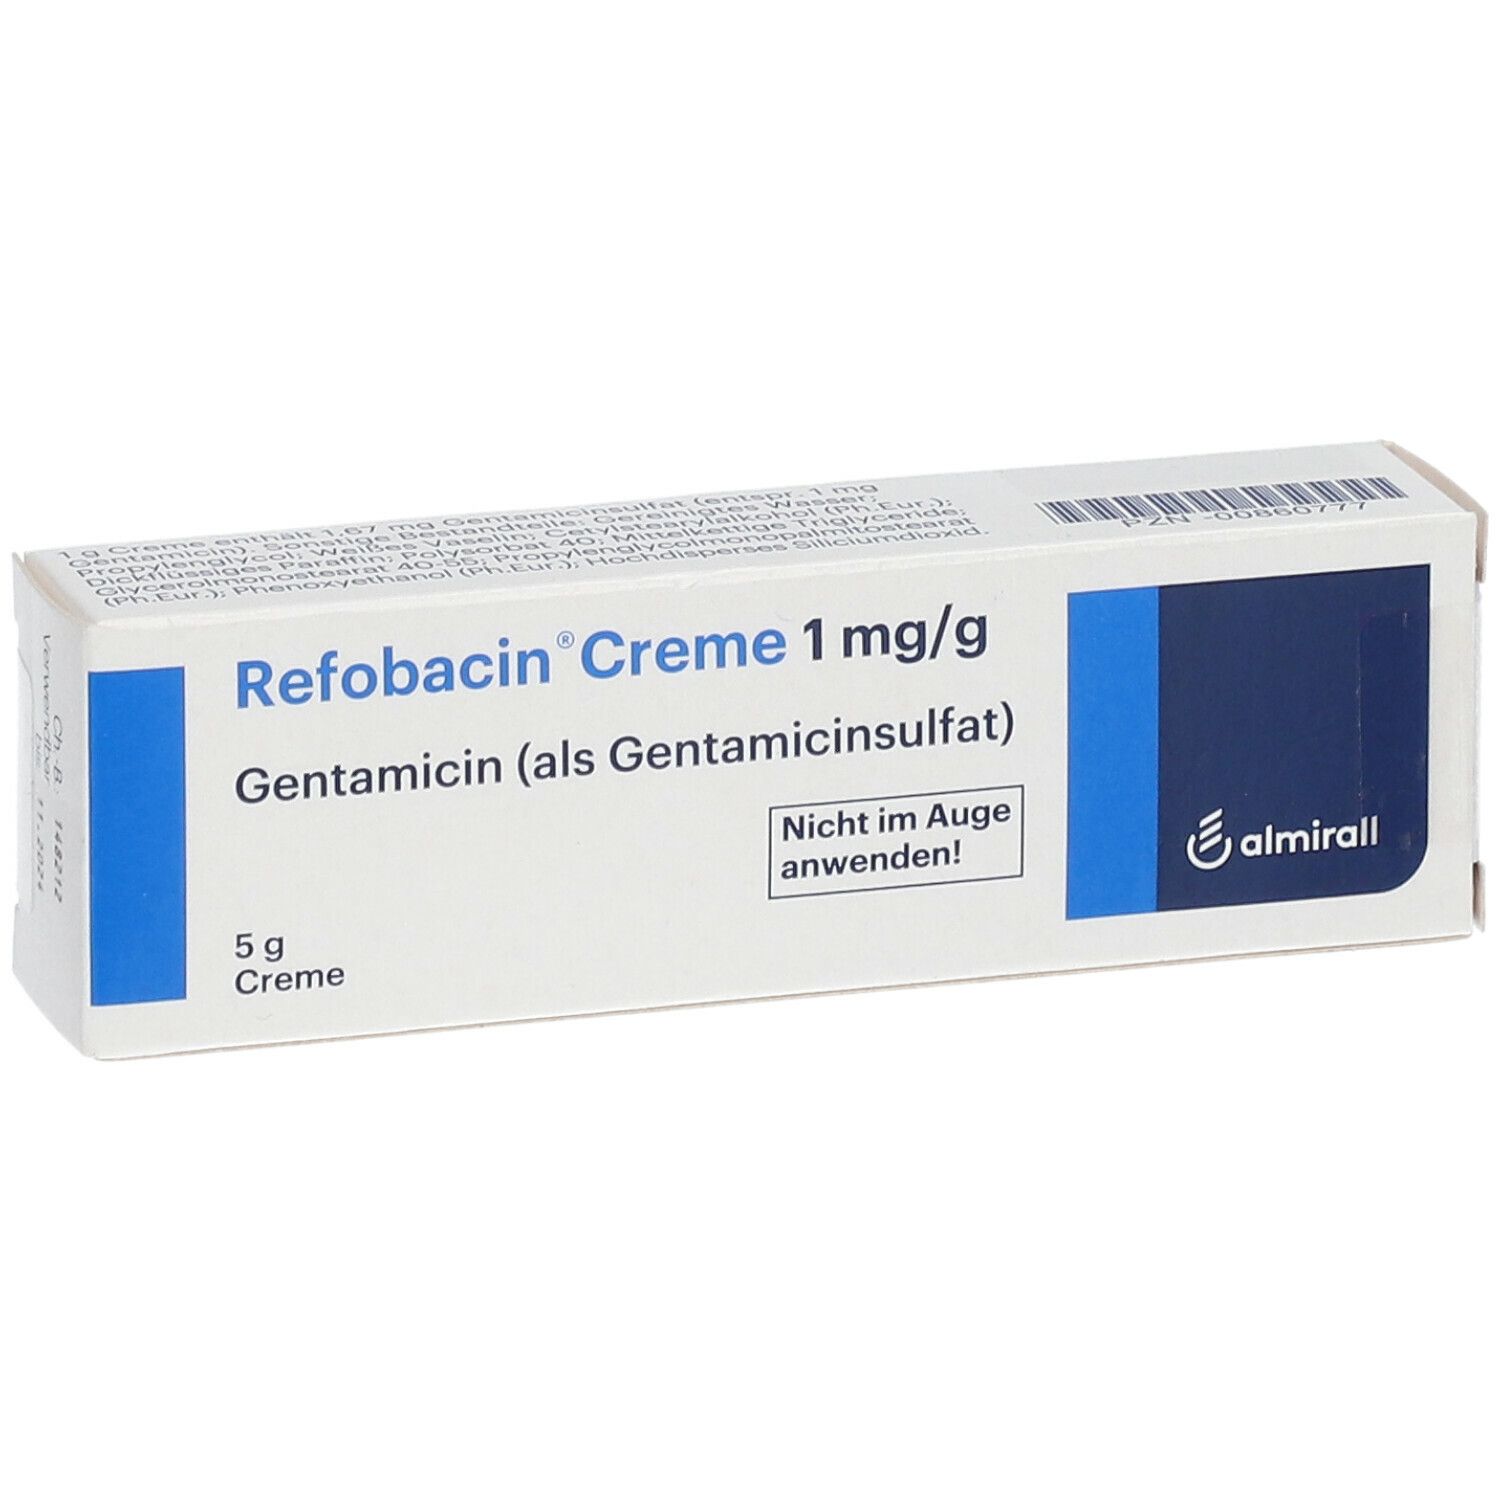 Refobacin® Creme 1 mg/g